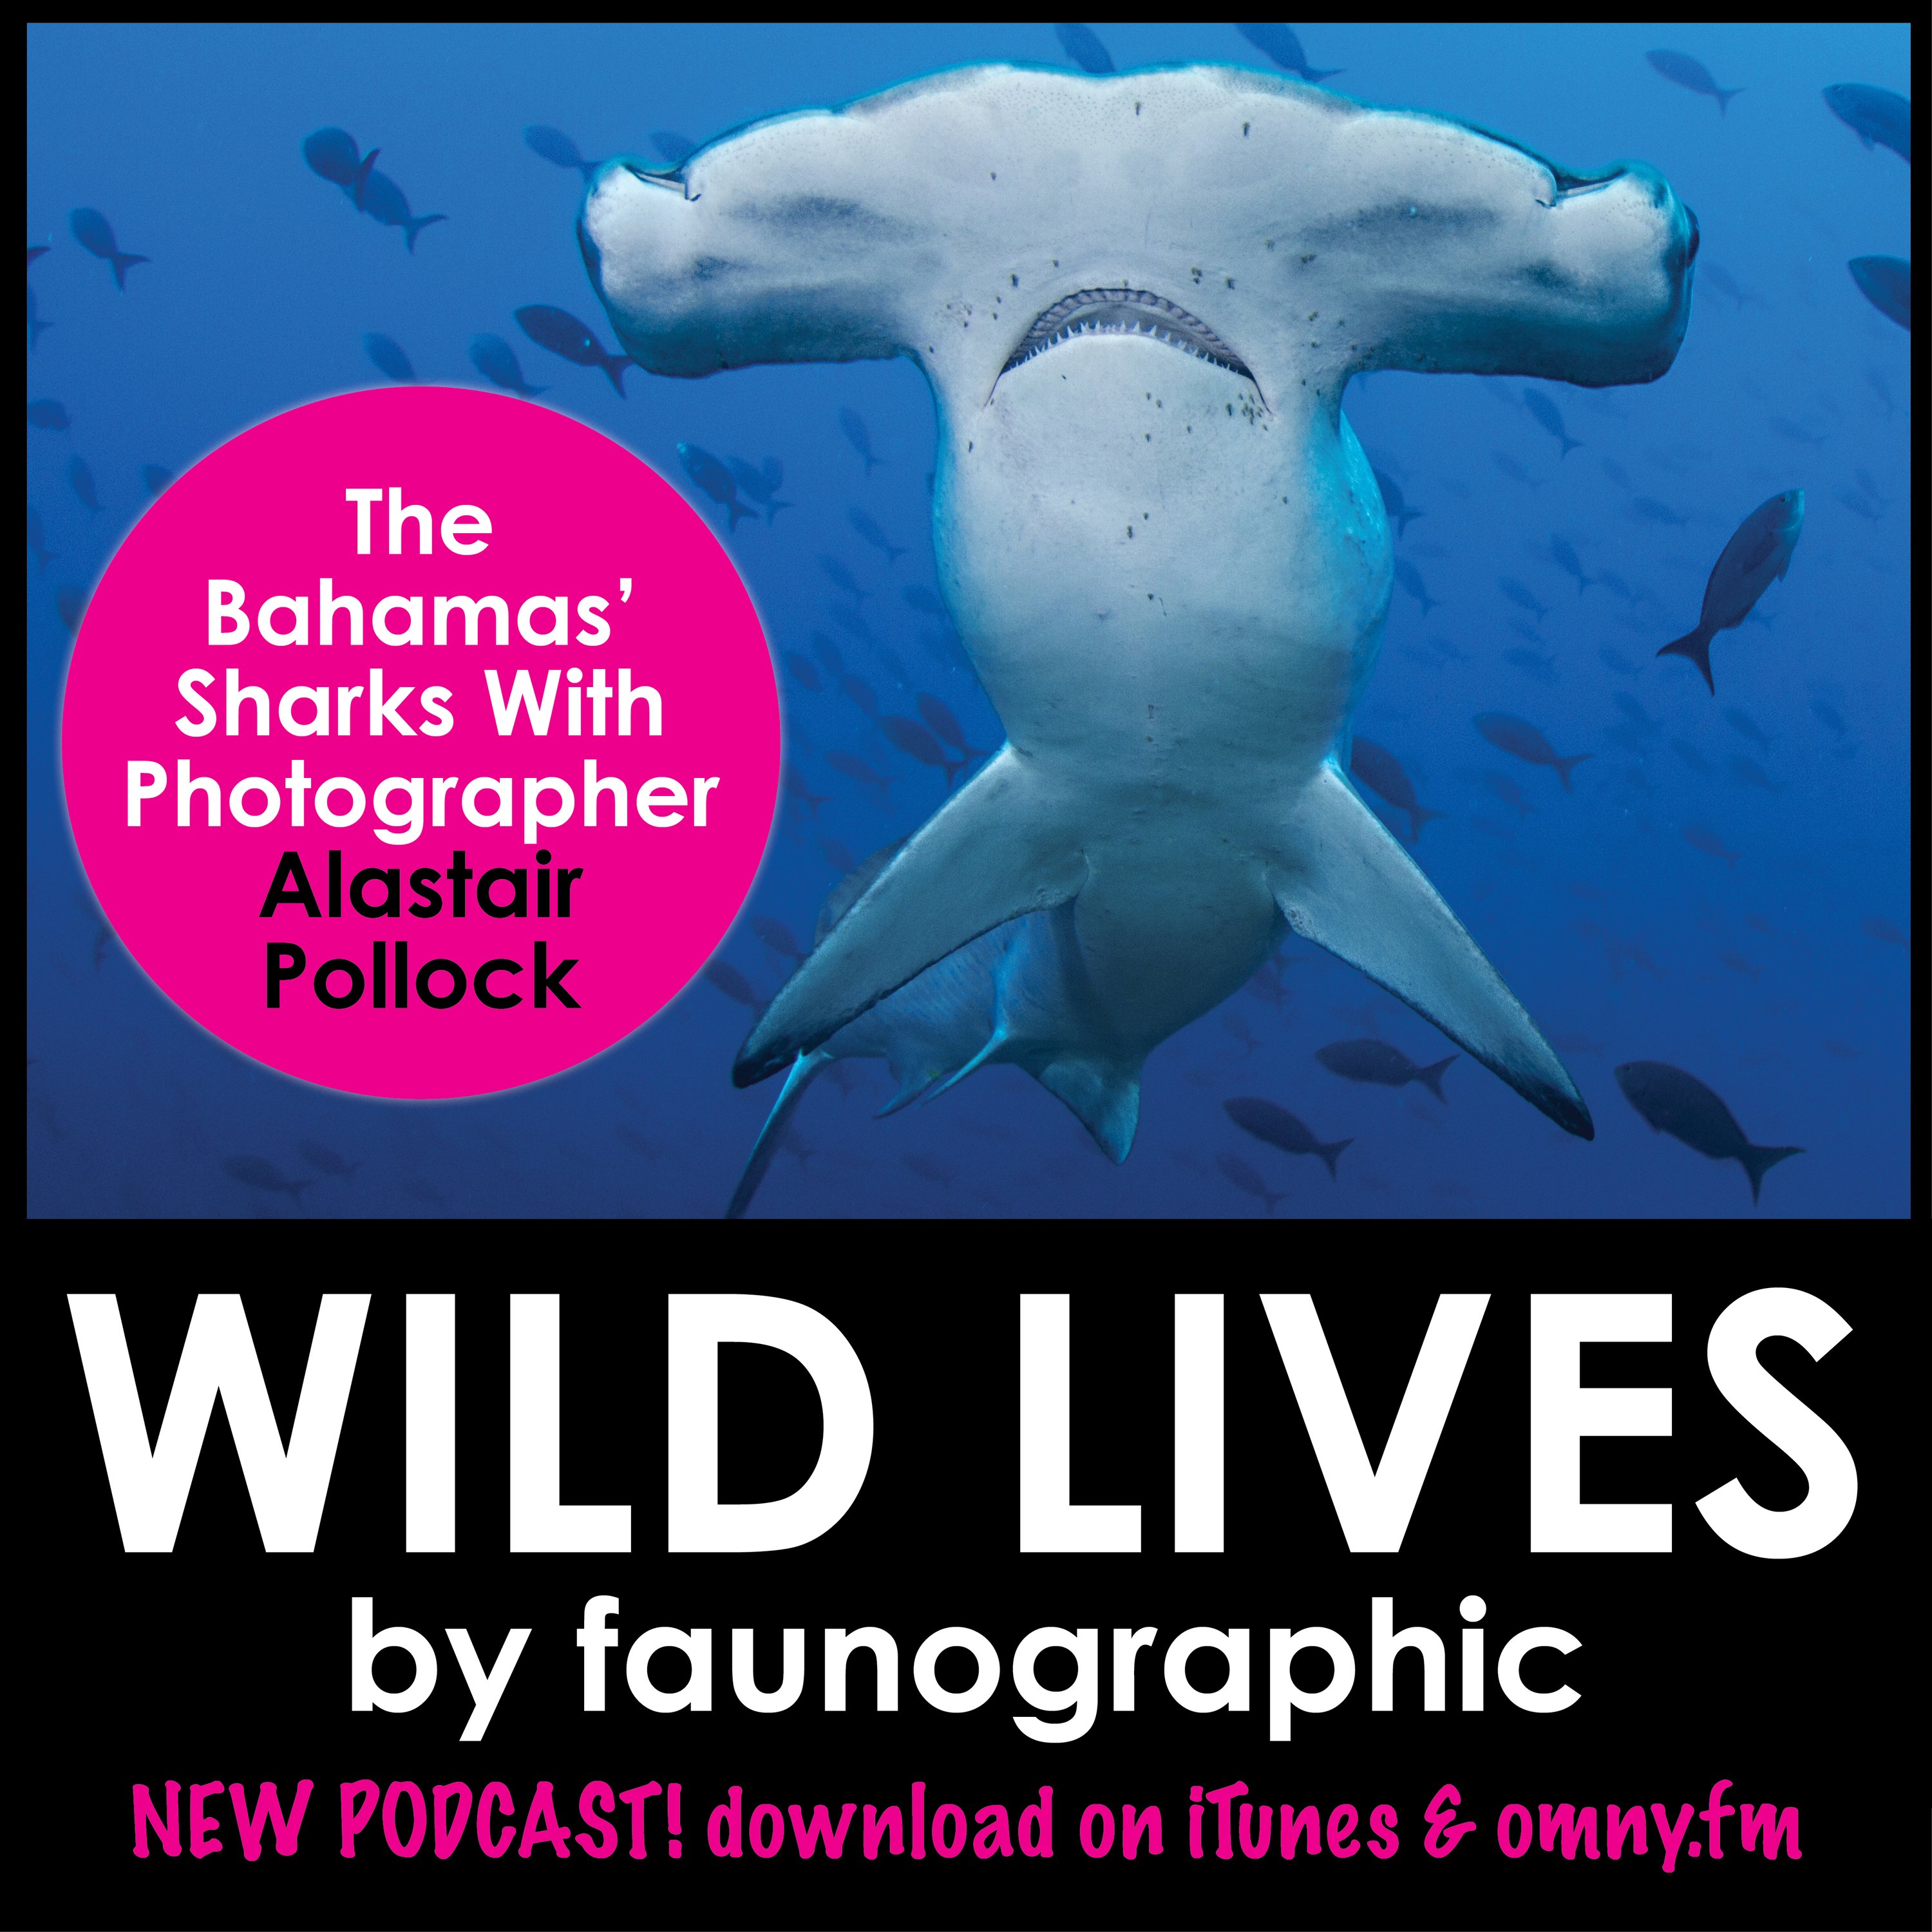 Alastair Pollock & the Sharks of the Bahamas